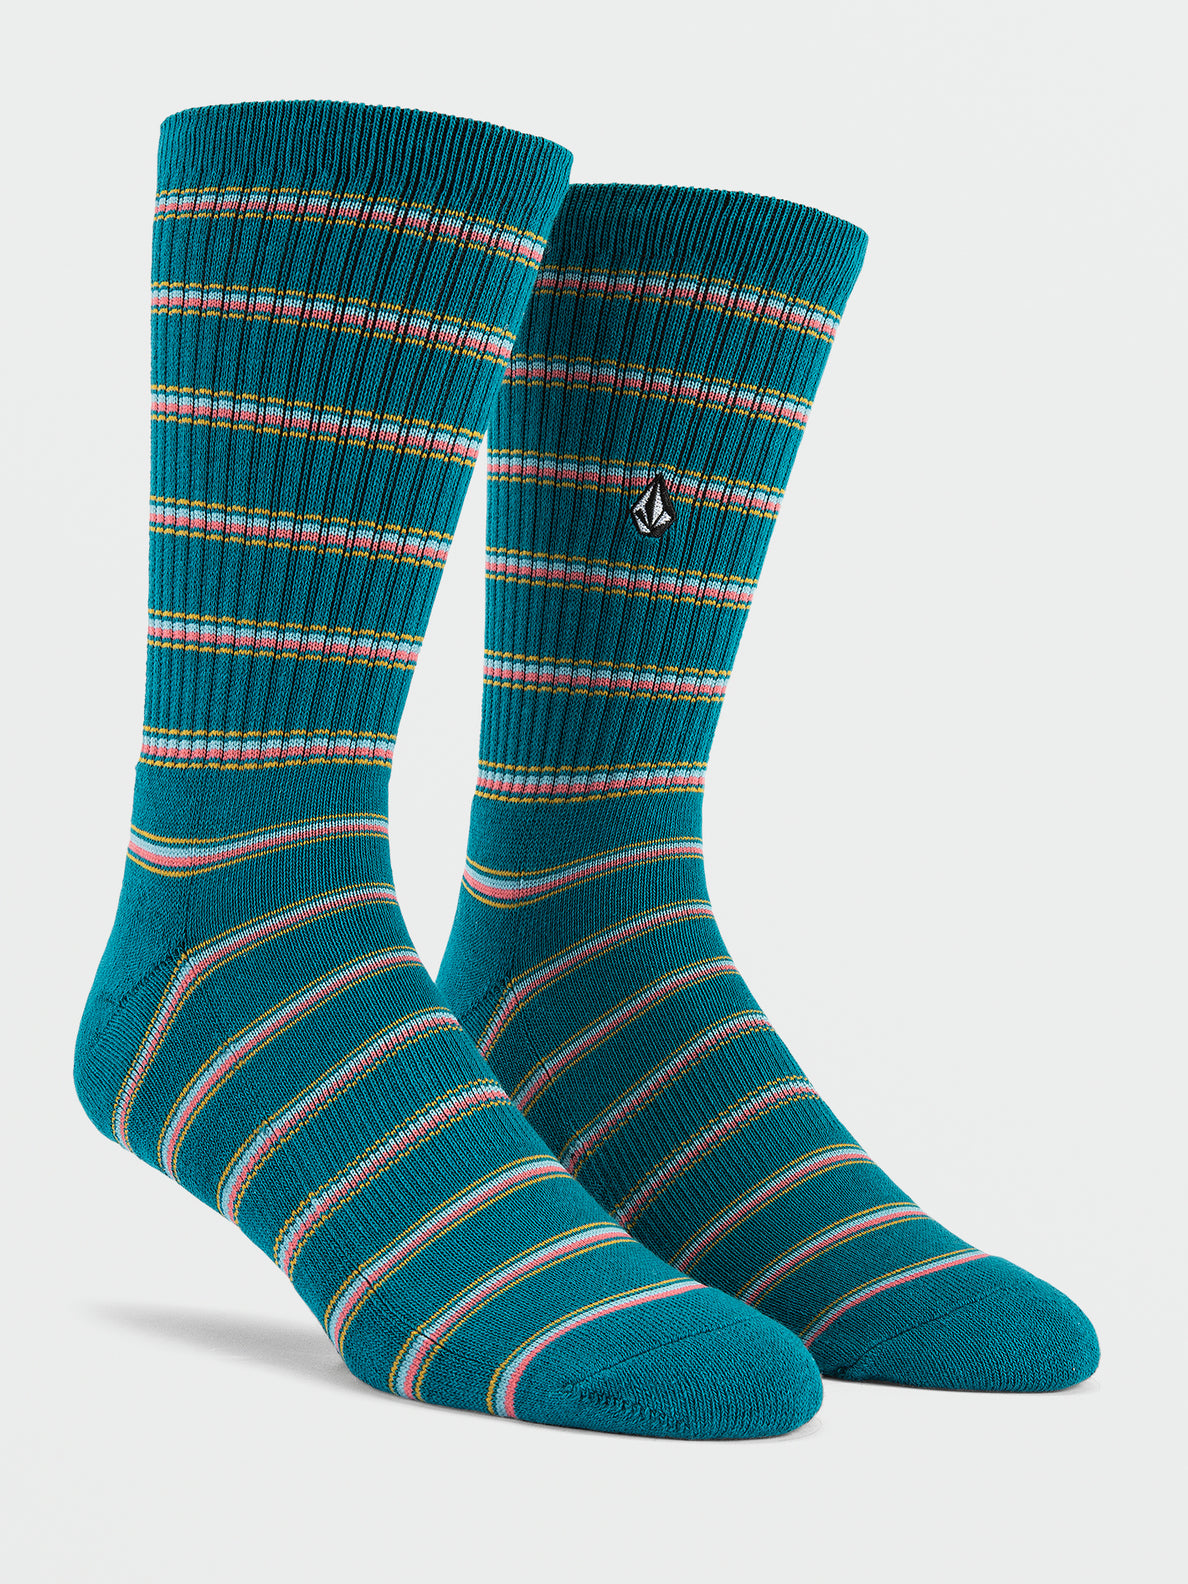 Stoney Stripes Socks - Ocean Teal